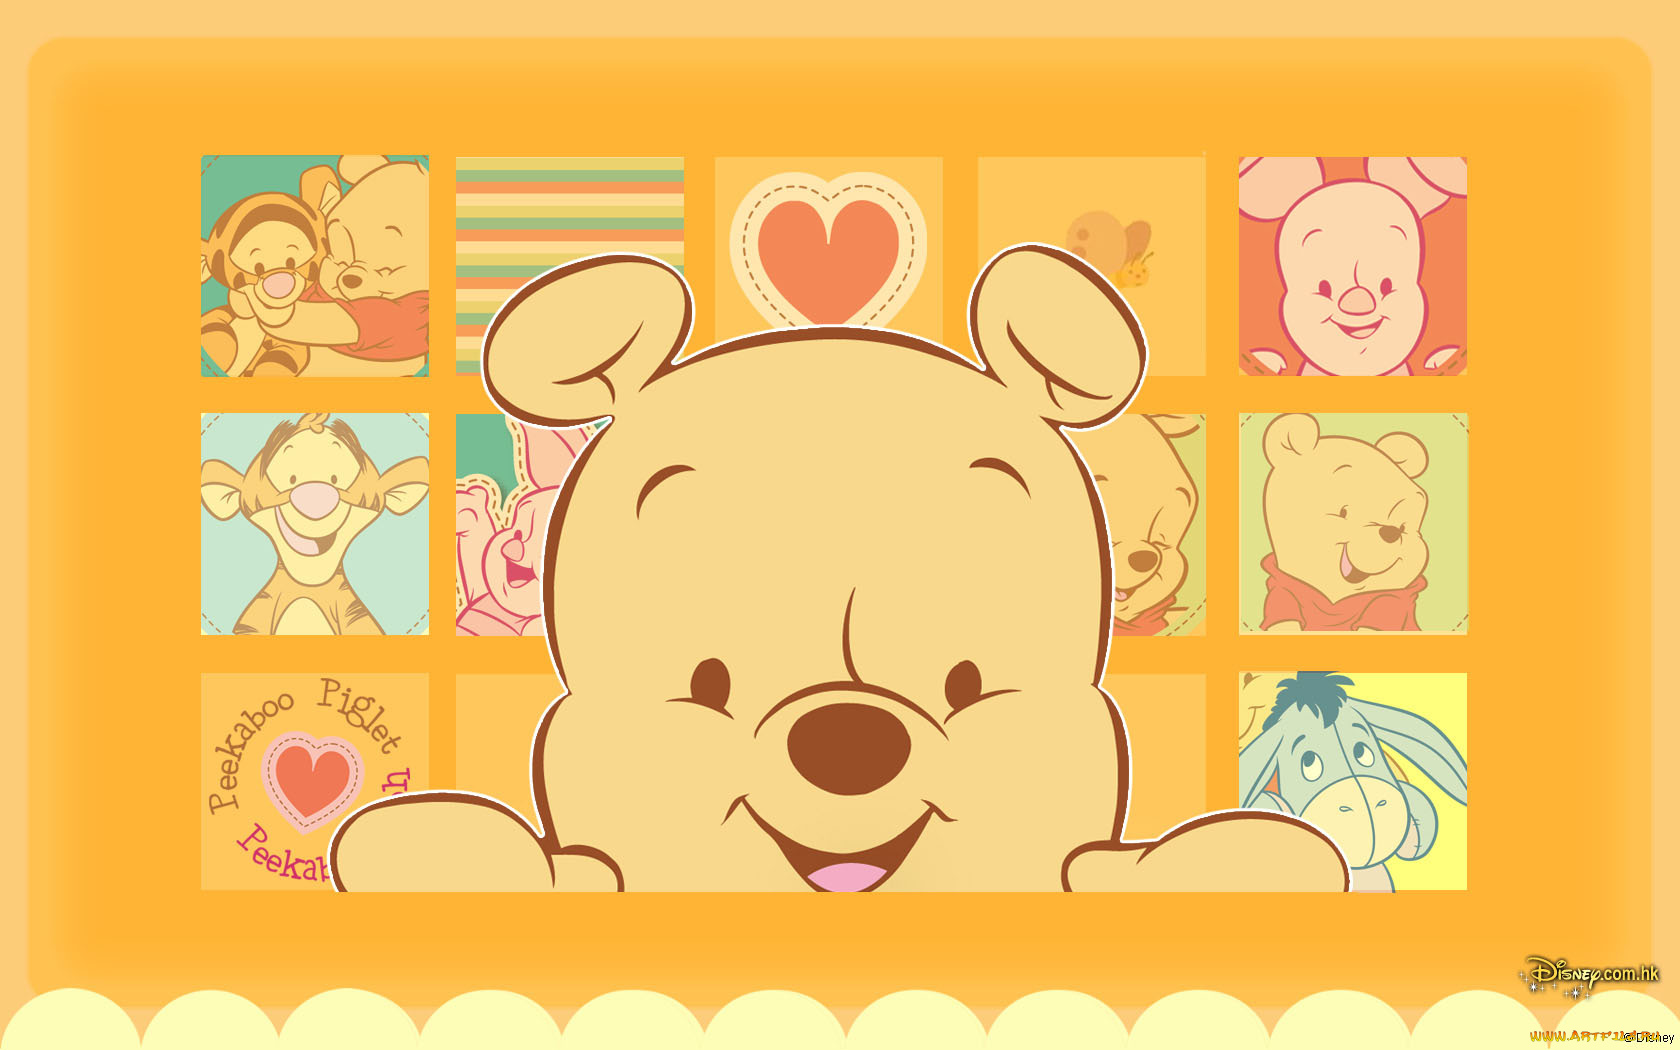 мультфильмы, winnie, the, pooh